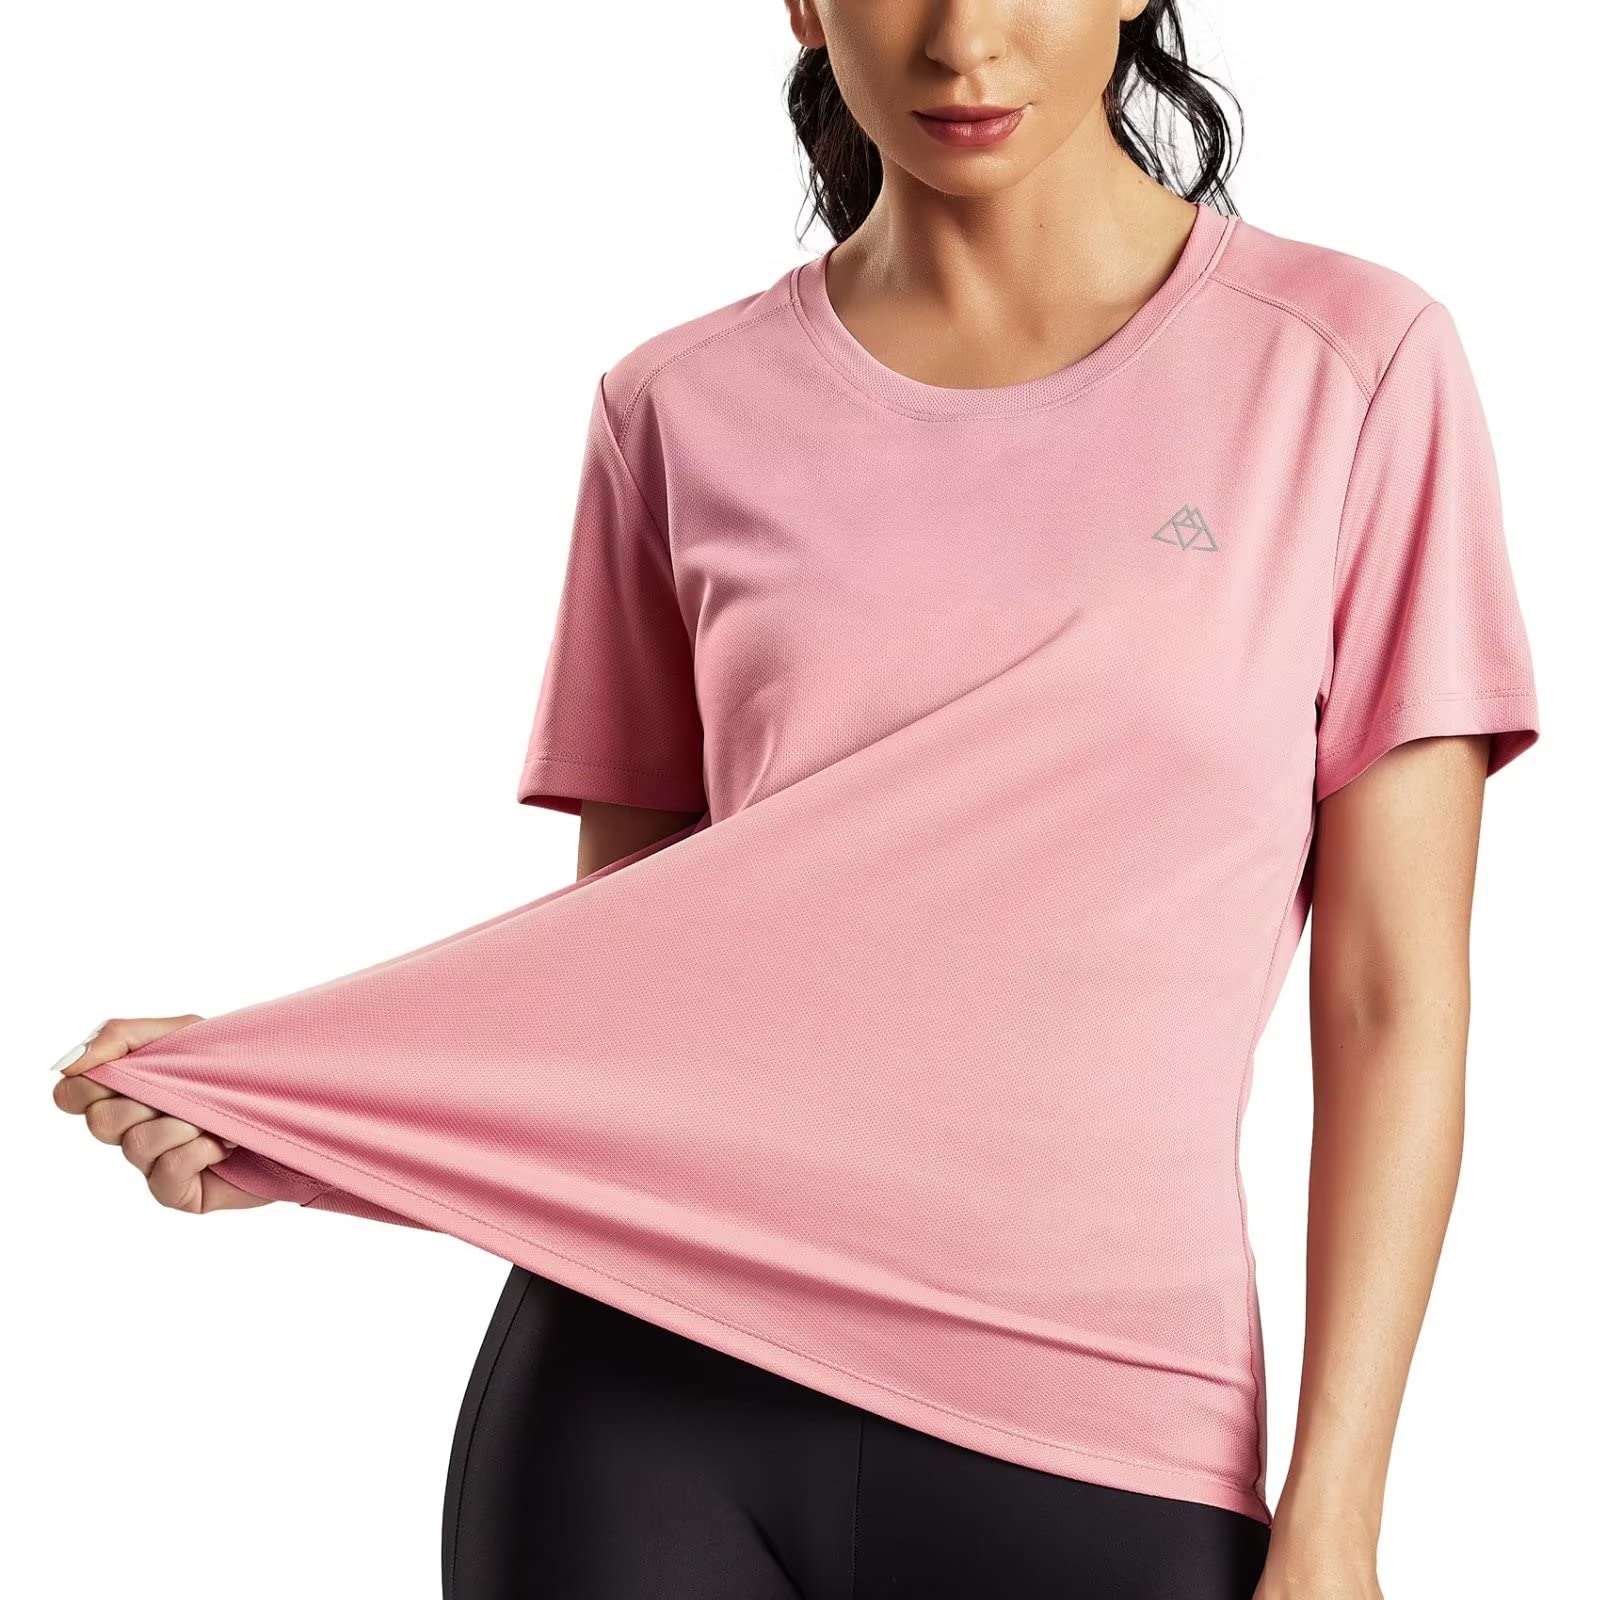 Women Sport Shirt Slim Running Tops Mesh Hollow Out Short Sleeve T